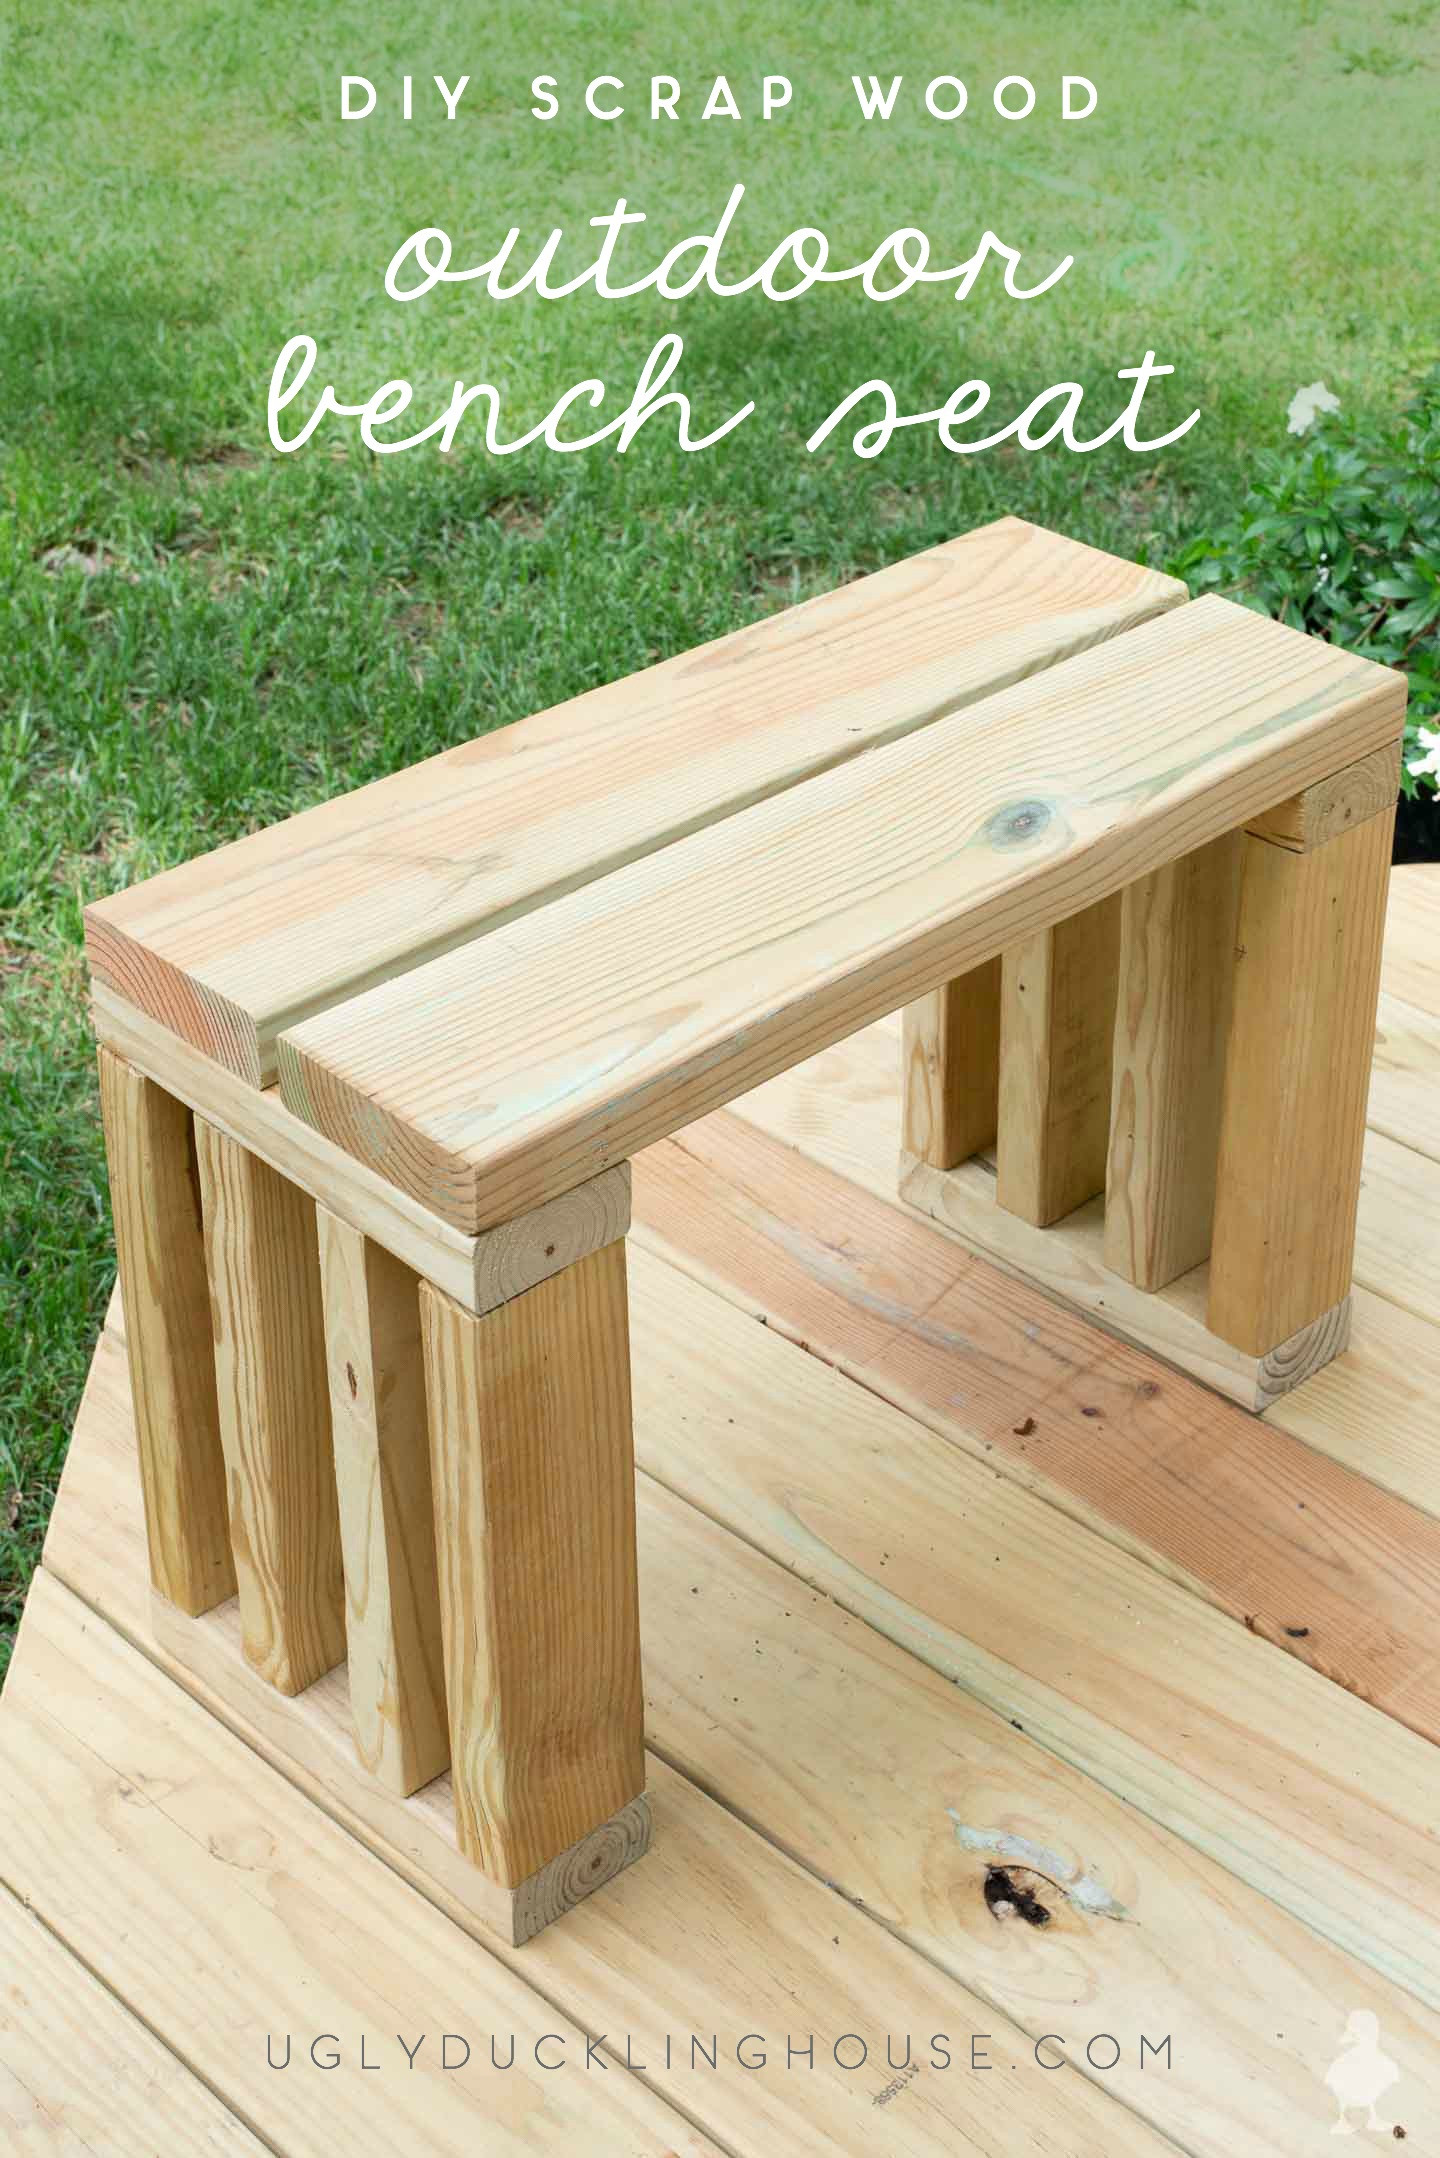 DIY Wood Bench
 Scrap Wood Outdoor Bench Seat